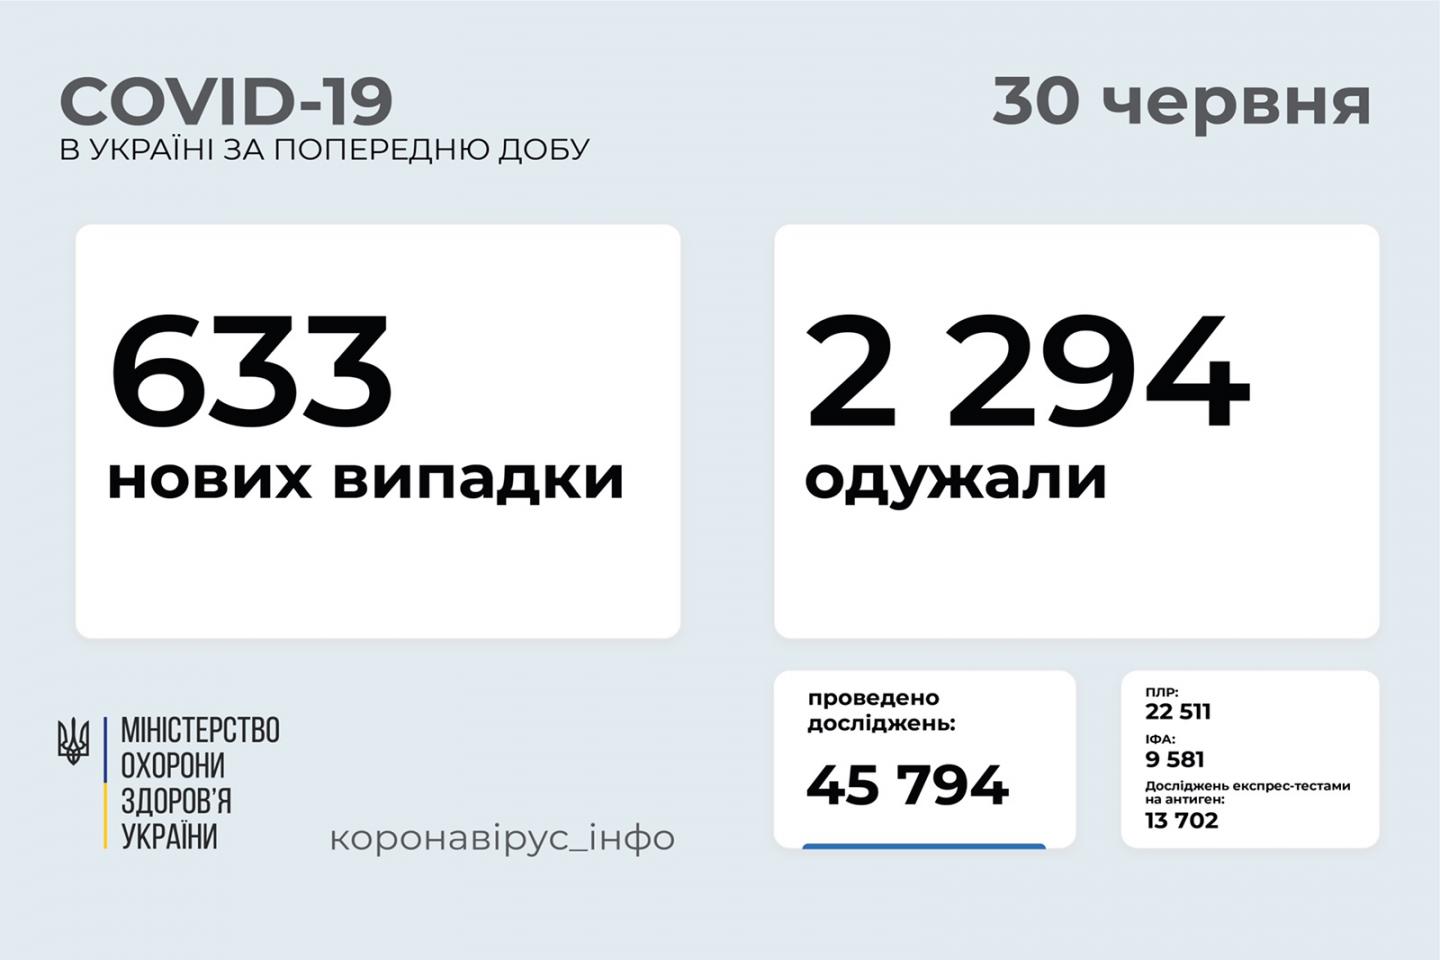 http://dunrada.gov.ua/uploadfile/archive_news/2021/06/30/2021-06-30_7692/images/images-91387.jpg